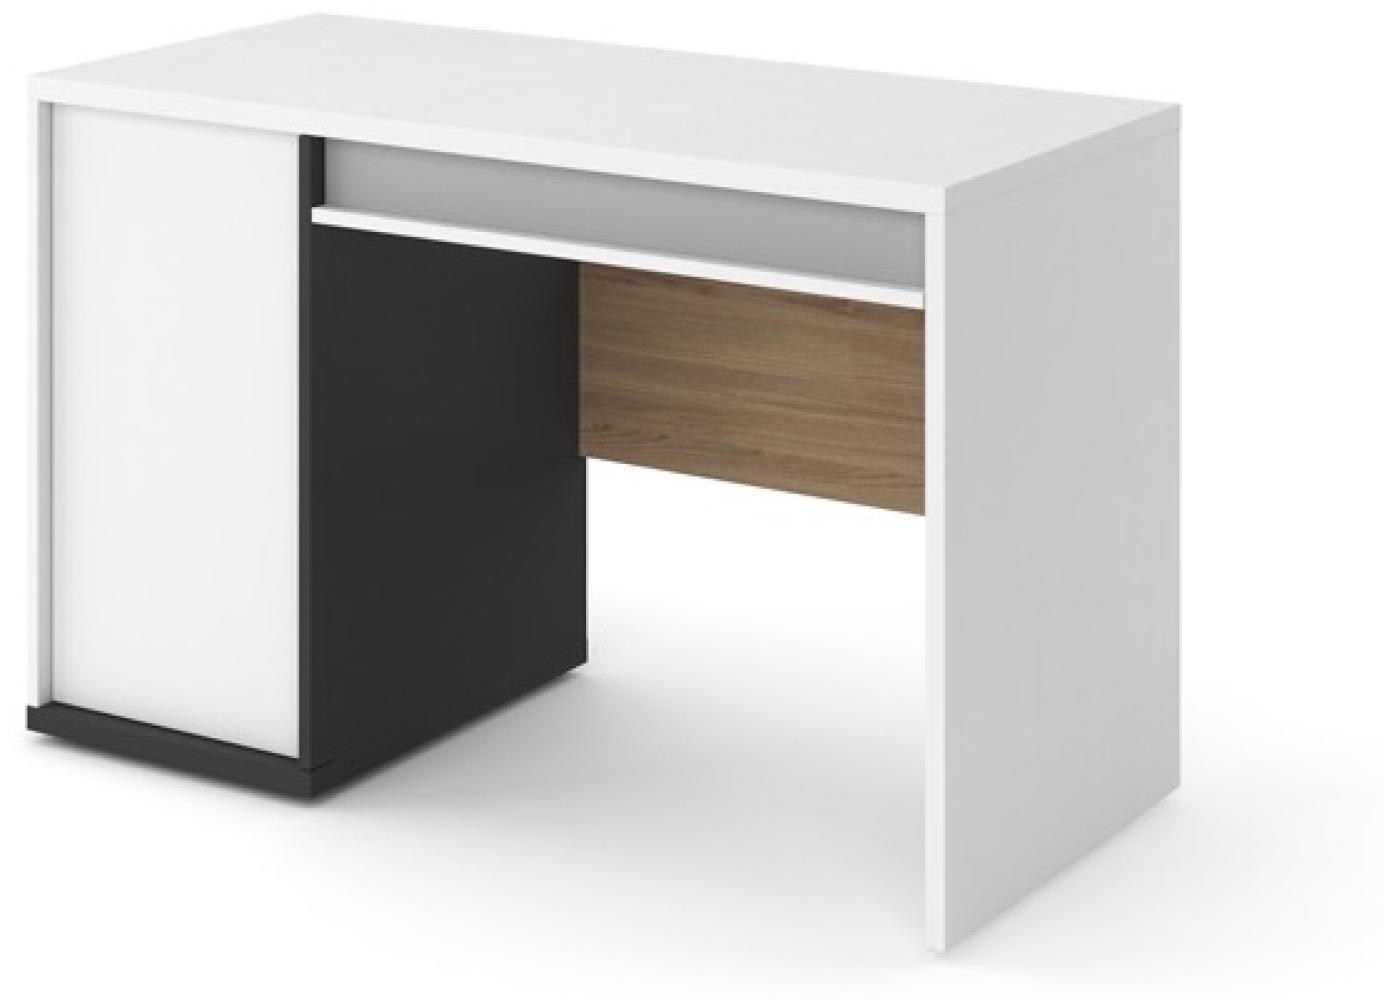 Schreibtisch "Imola" Schülerschreibtisch 120x56cm weiß graphit grau Salisbury Eiche Bild 1